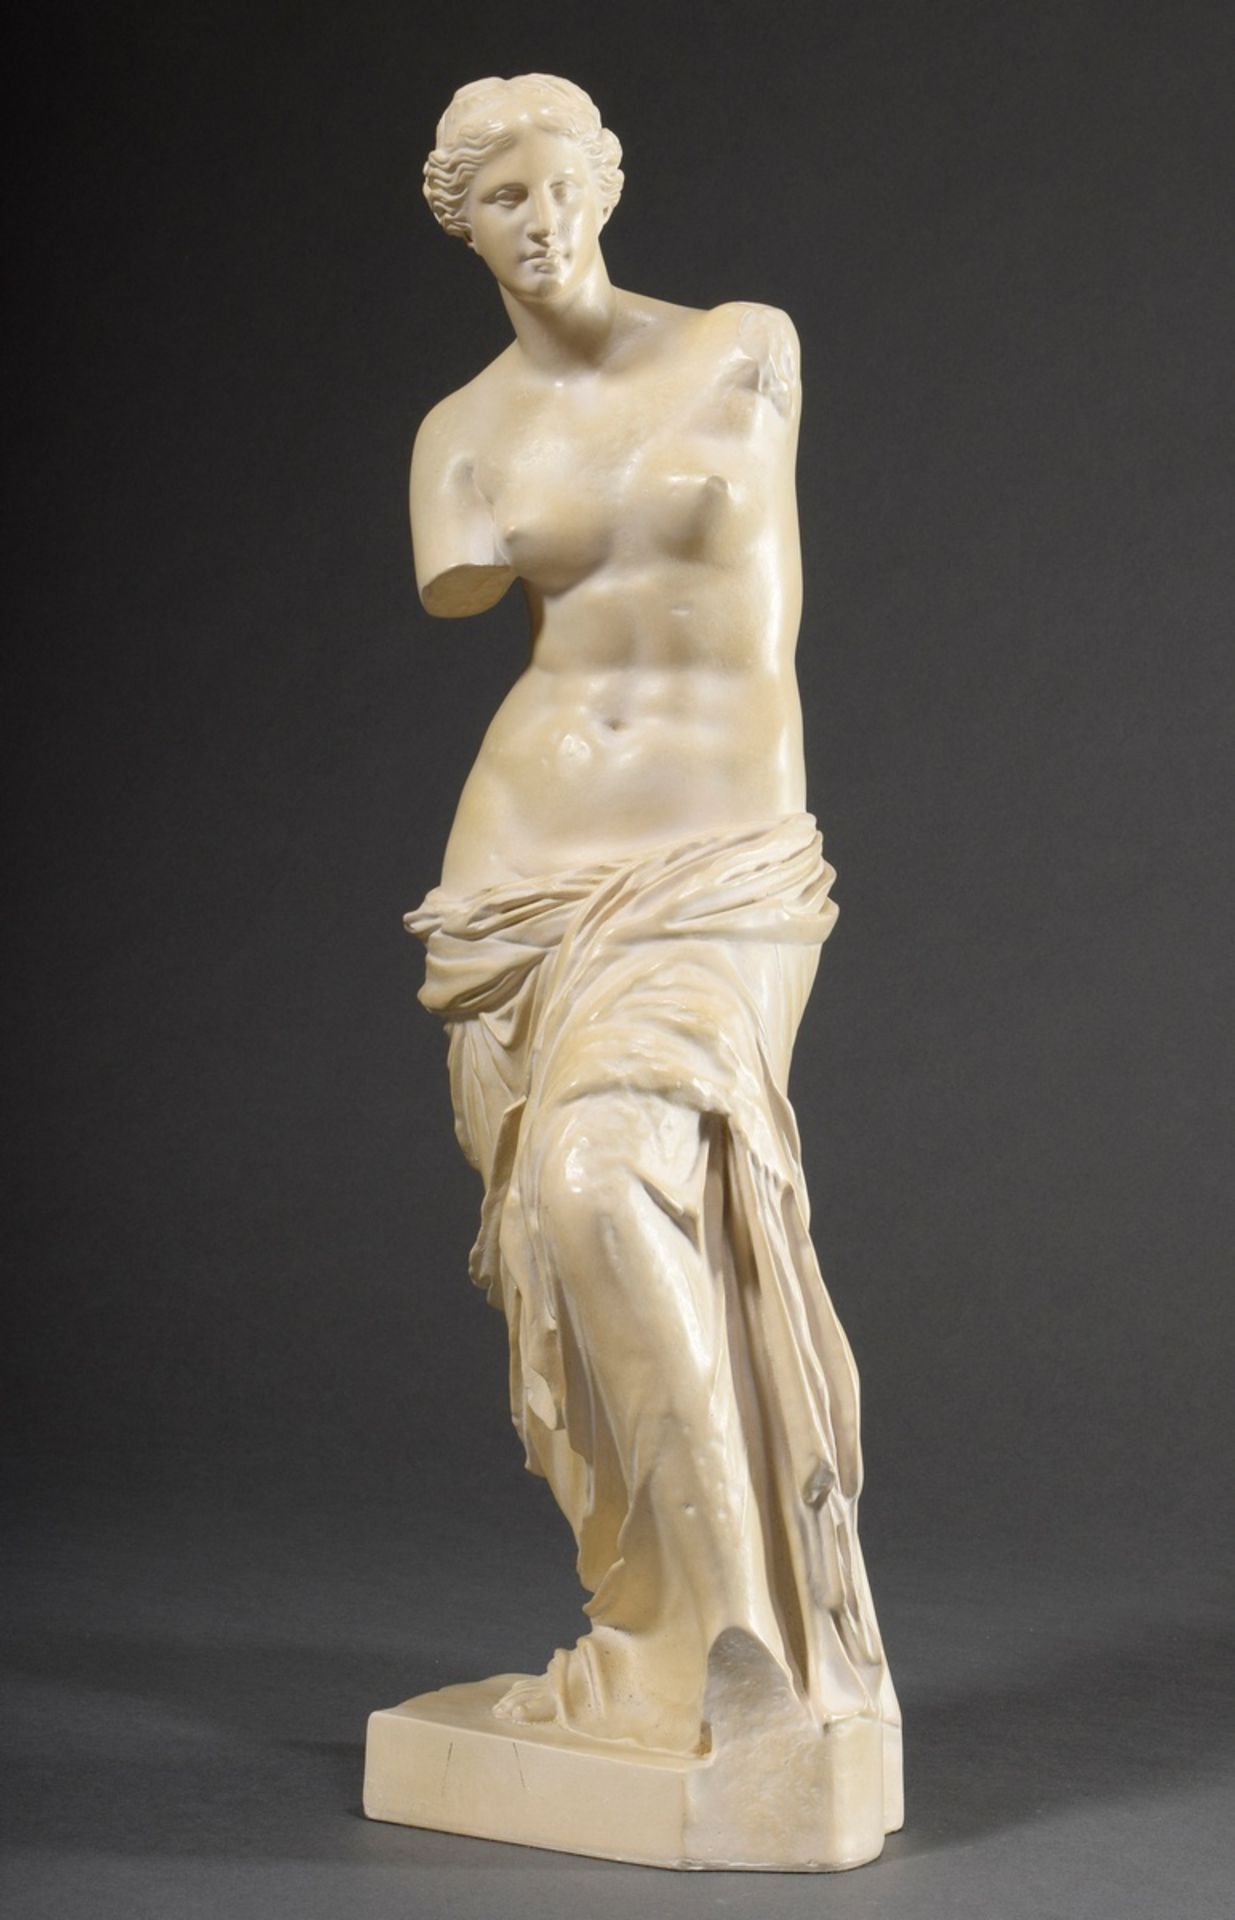 Museum copy "Venus de Milo", patinated cast stone, Musee du Louvre, h. 49cm, partially discoloured